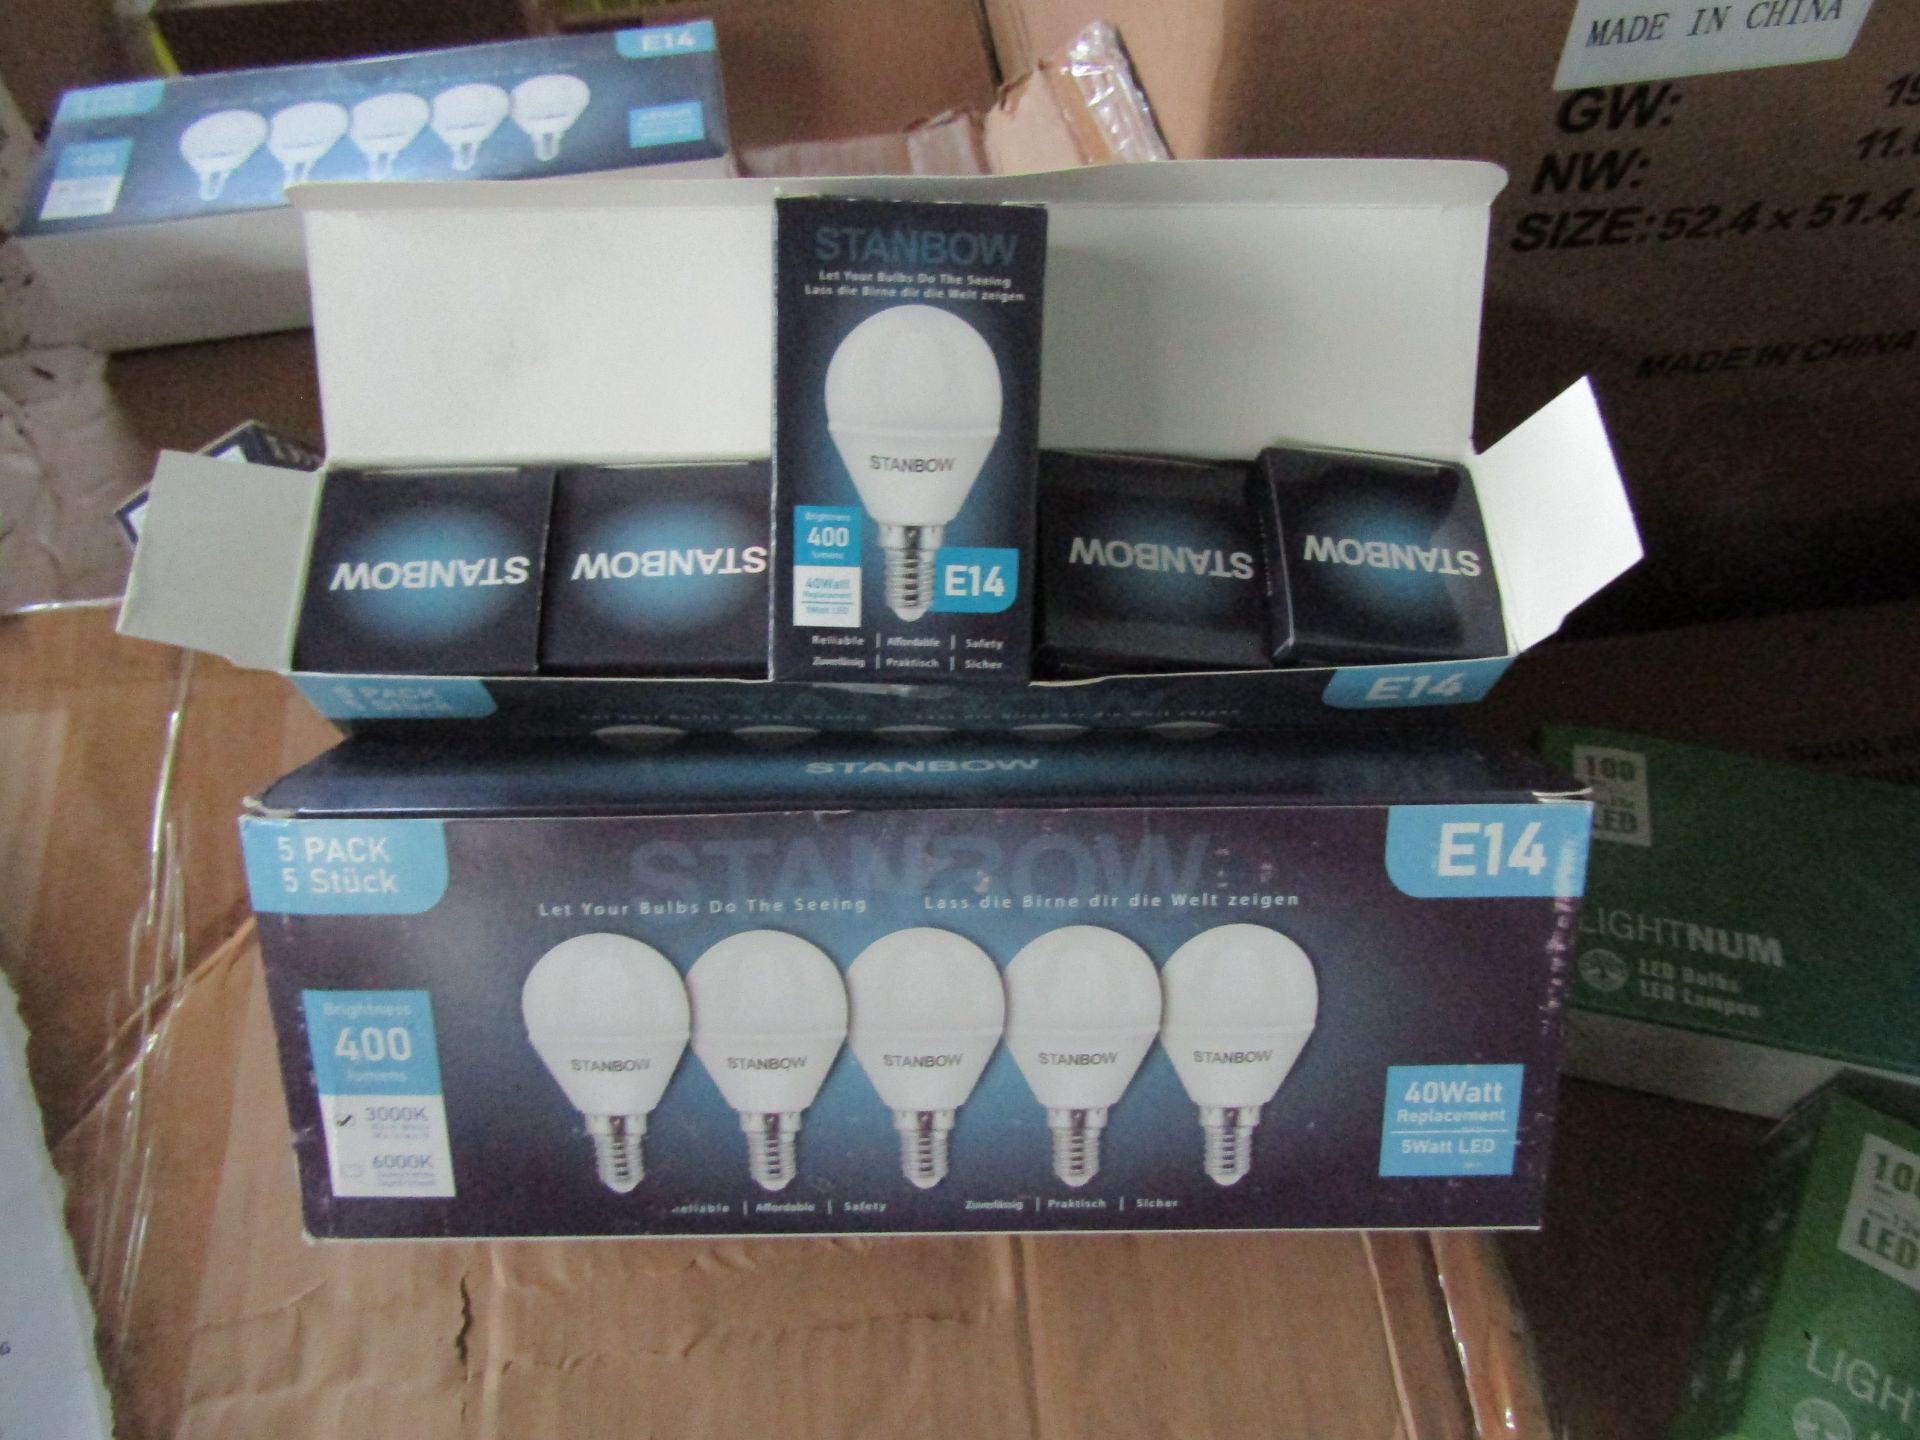 2X STANBOW - E14 400 Lumen LED Light Bulbs - Pack of 5 - New & Boxed.